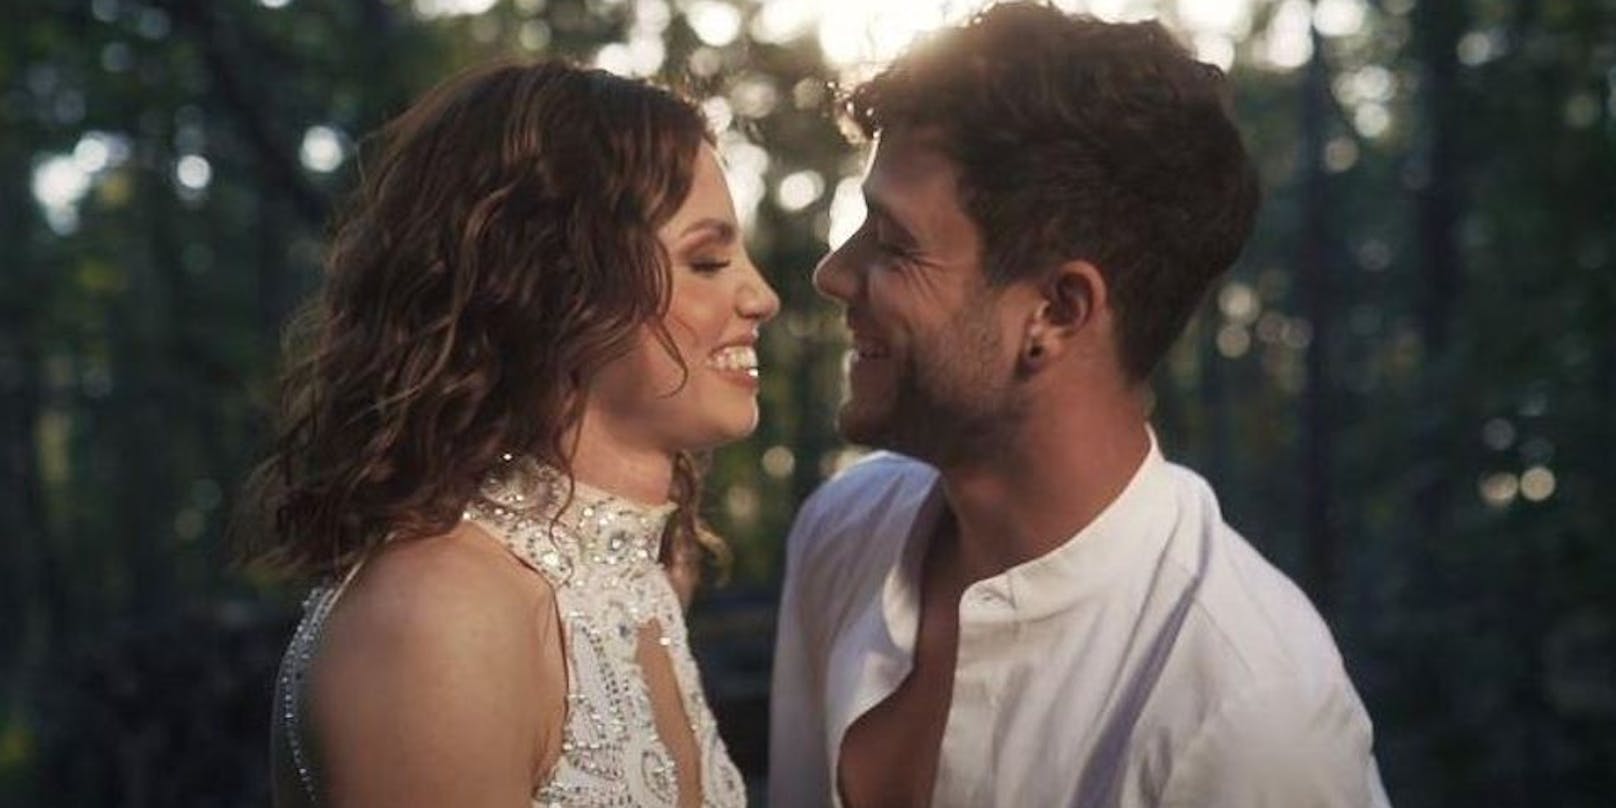 Für das neu veröffentlichte Musikvideo zum Song "Diamant" wurde Luca Hänni (25) beim Tanzen im Wald gefilmt. Dabei an seiner Seite: Seine "Let’s Dance"-Tanzpartnerin Christina Luft (30).